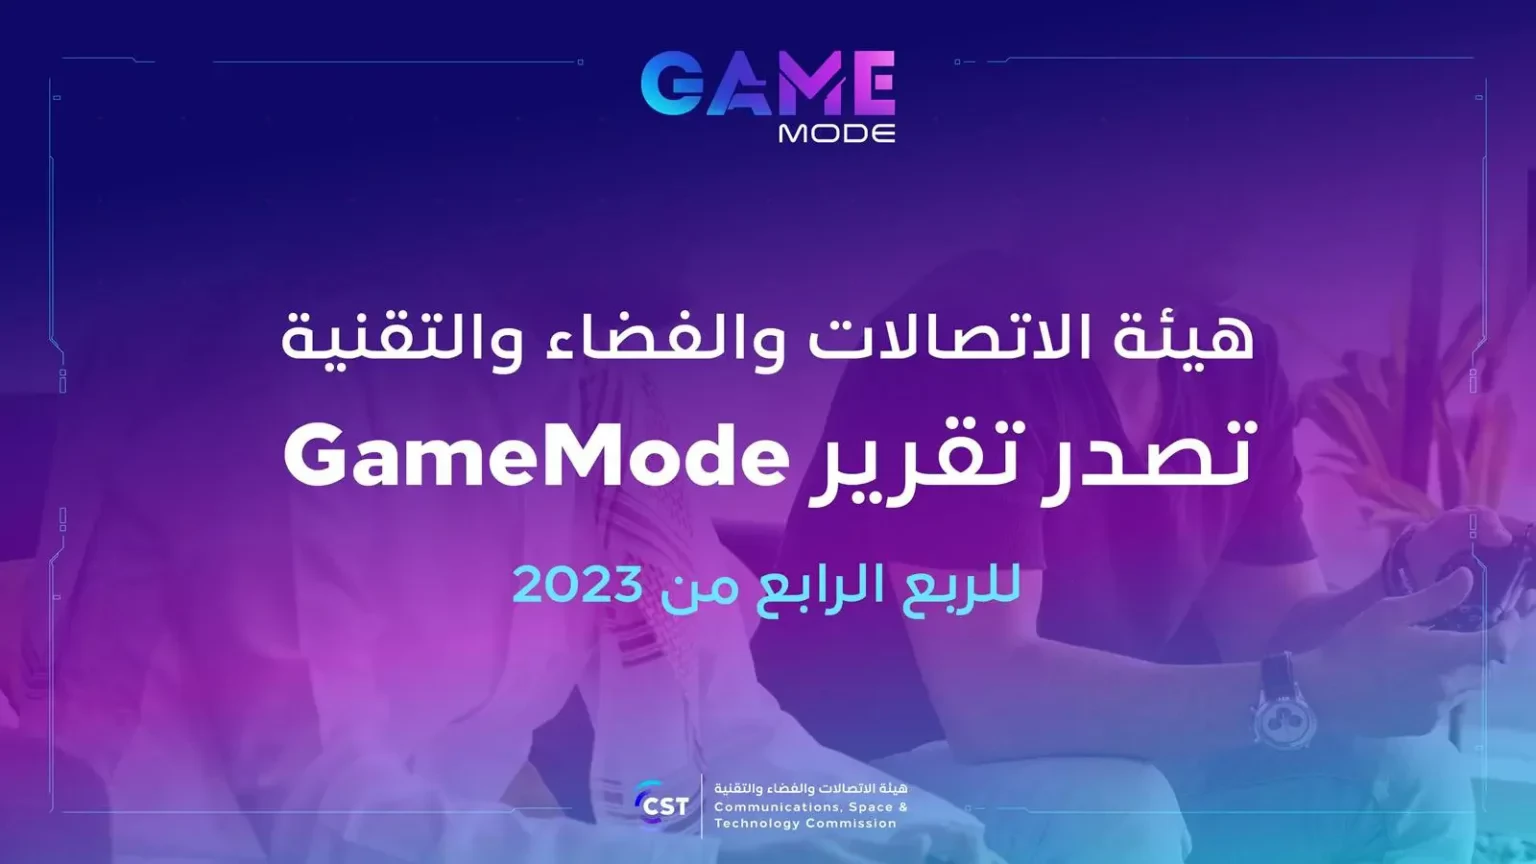 “الاتصالات والفضاء” تصدر تقرير game mode للربع الرابع من 2023